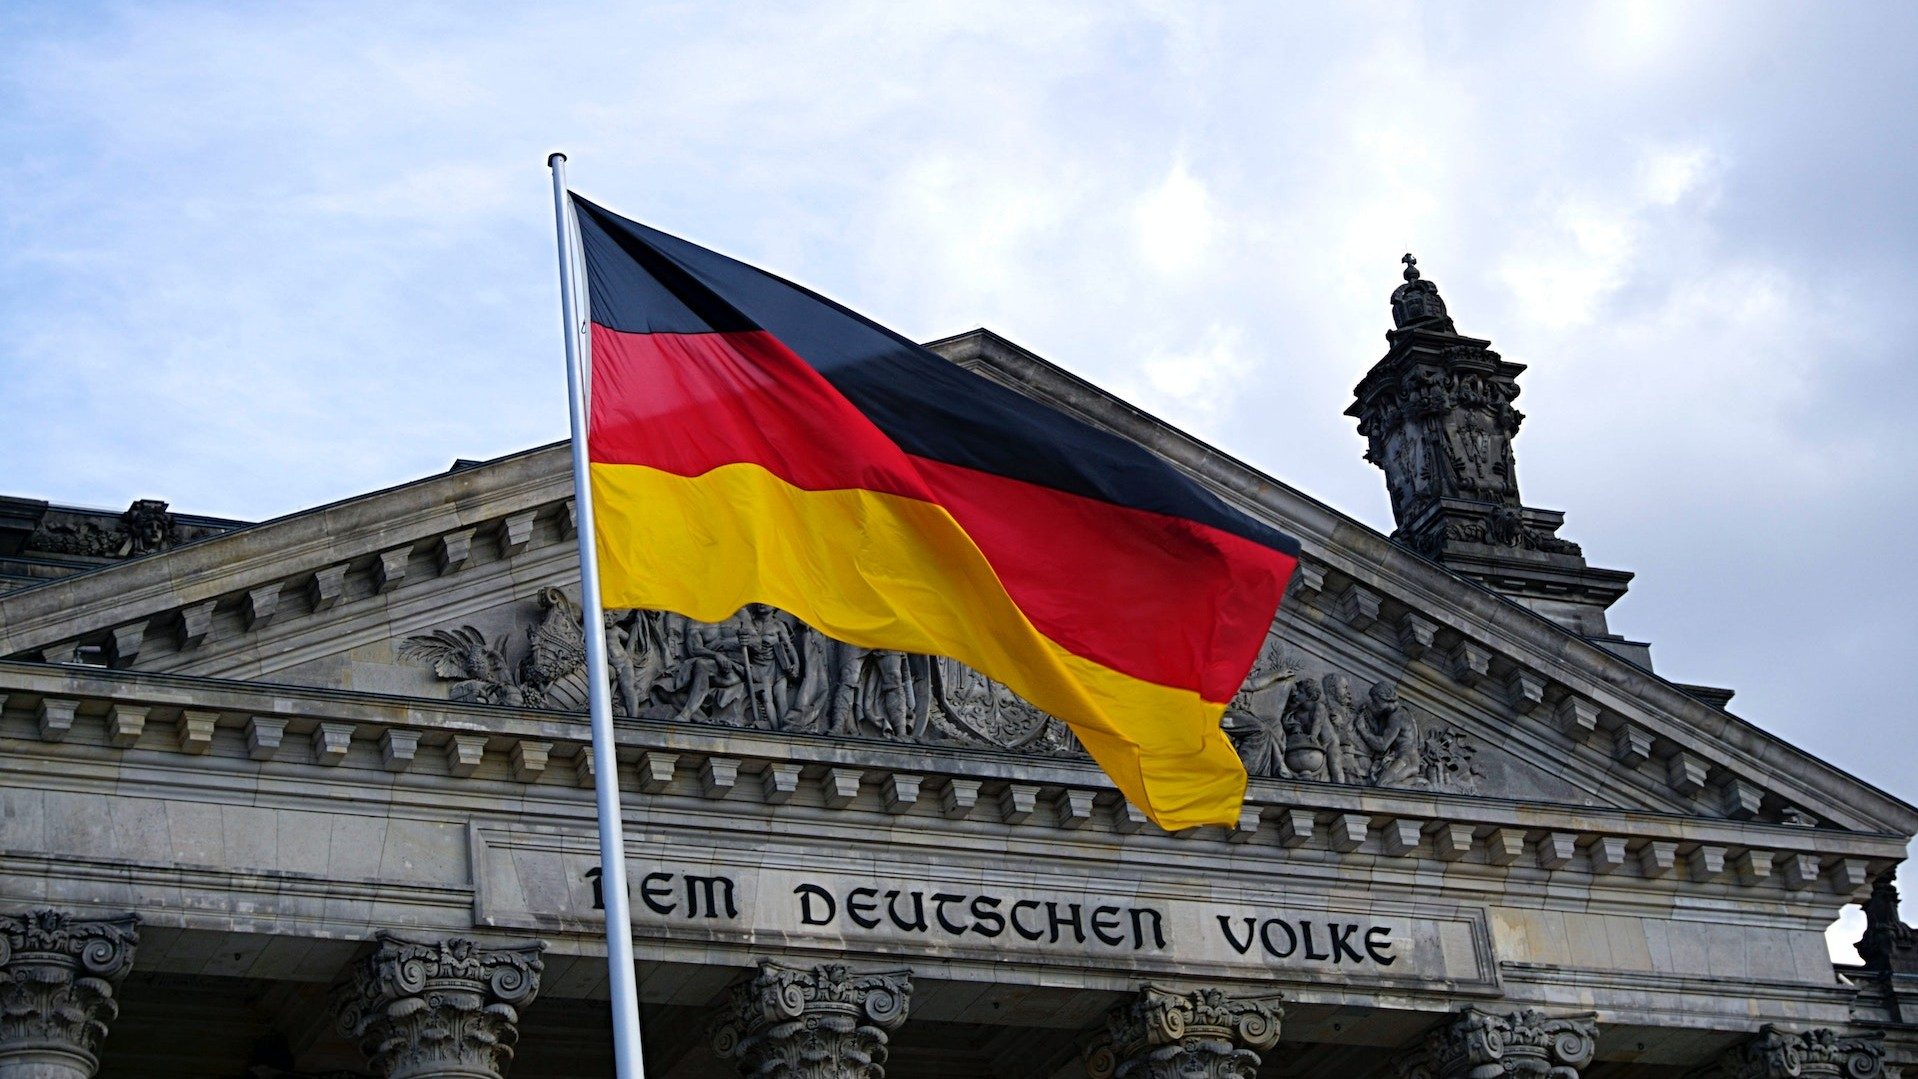 Die deutsche Fahne vor dem Schriftzug "Dem Deutschen Volke" am Reichstagsgebäude